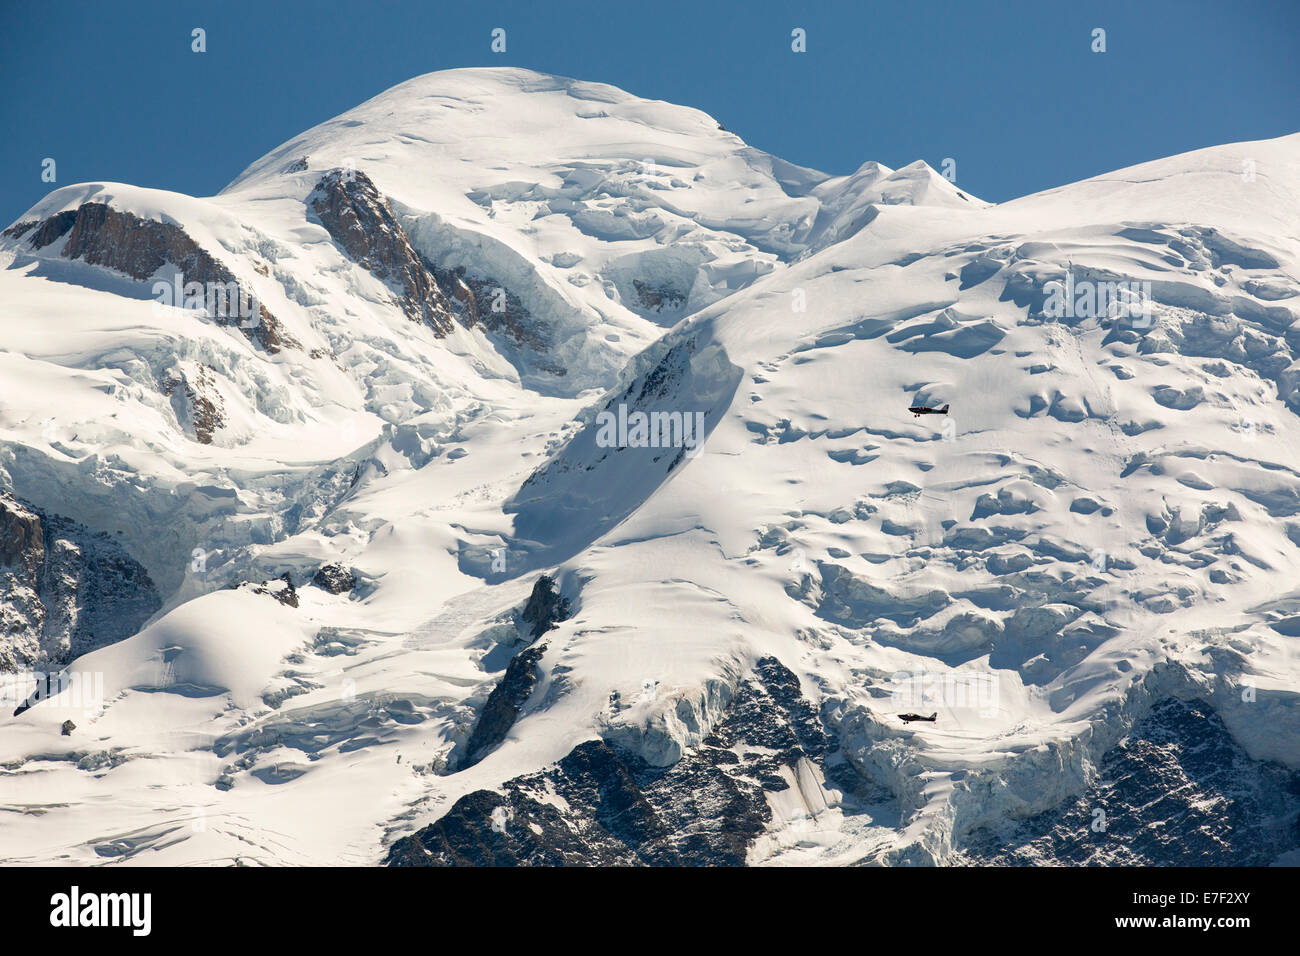 Le Mont Blanc et le glacier des Bossons à partir de l'Aiguille Rouge, France, avec deux plans de vol de plaisance. Banque D'Images